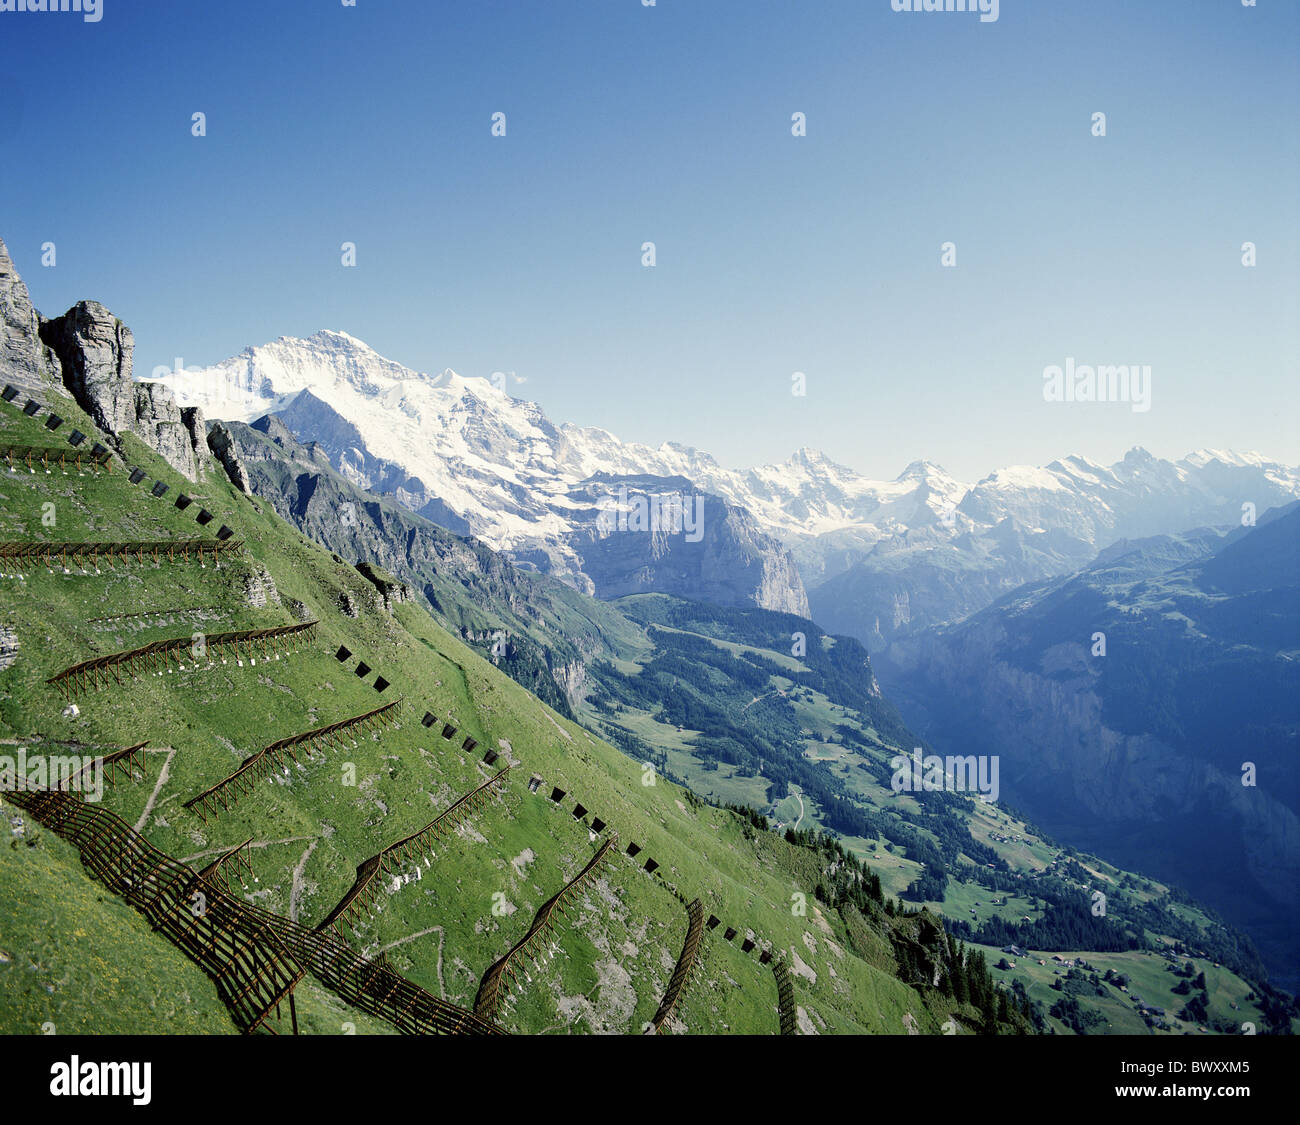 Jungfrau avalanche Lawine Schutz Schutz Verbauung Berge Alpen Alpen der  Schweiz E Stockfotografie - Alamy